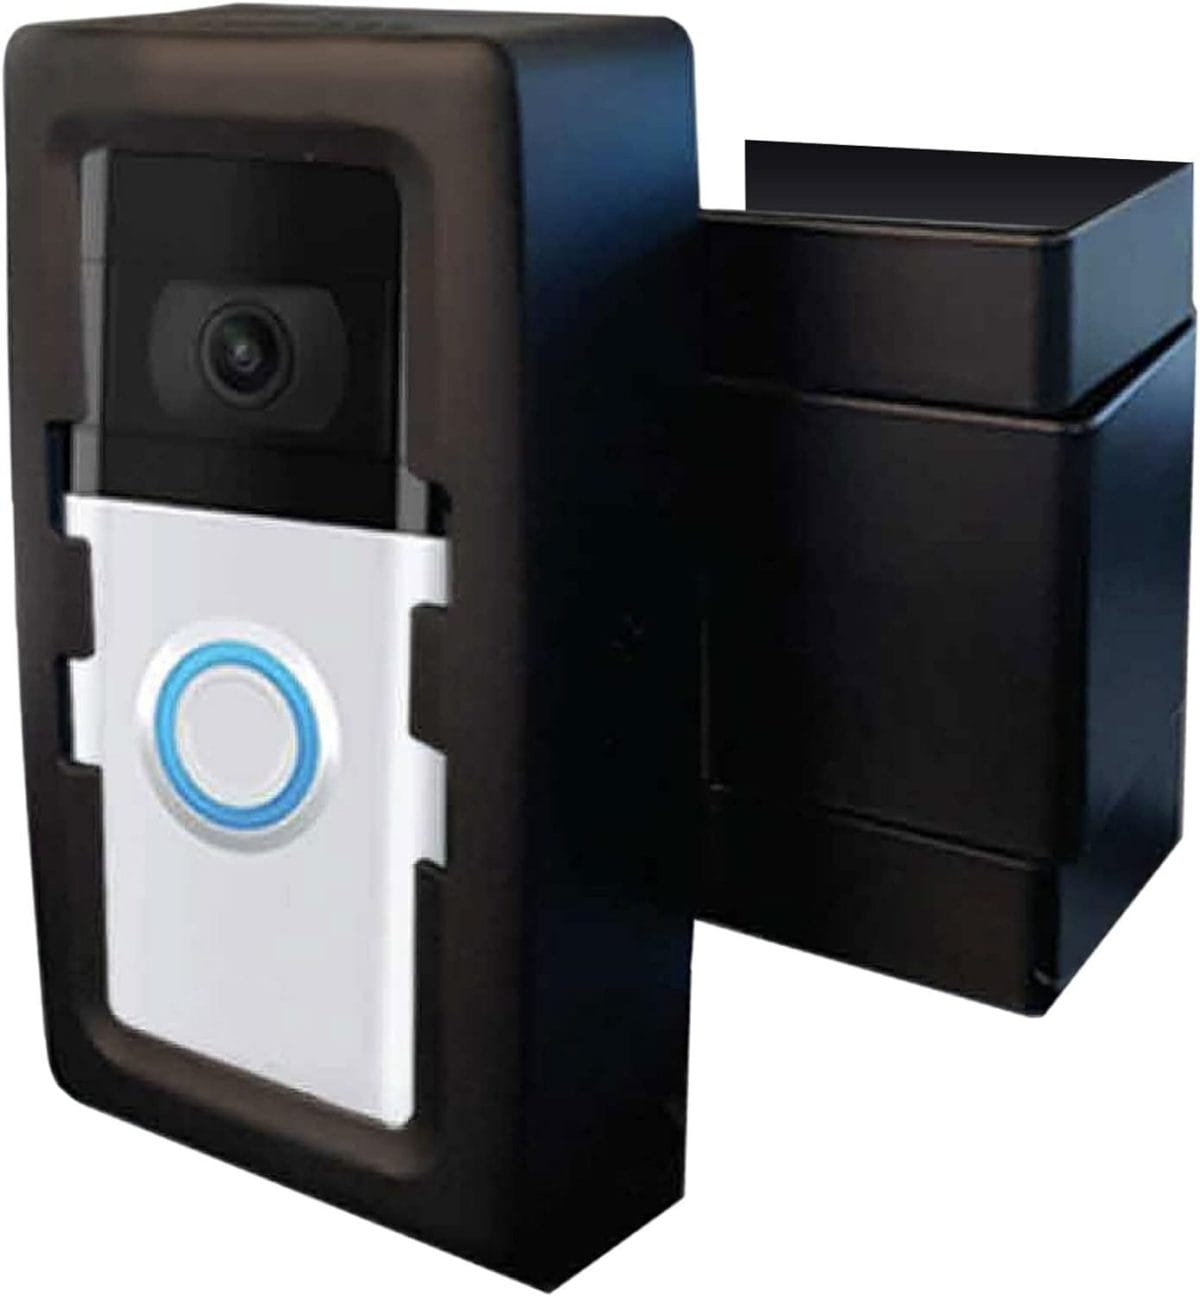 DoorbellBoa Anti-Theft Video Doorbell Door Mount, No Tools or Installation, Mounts Securely in Seconds, Compatible with Ring  Other Video Doorbells (Black)